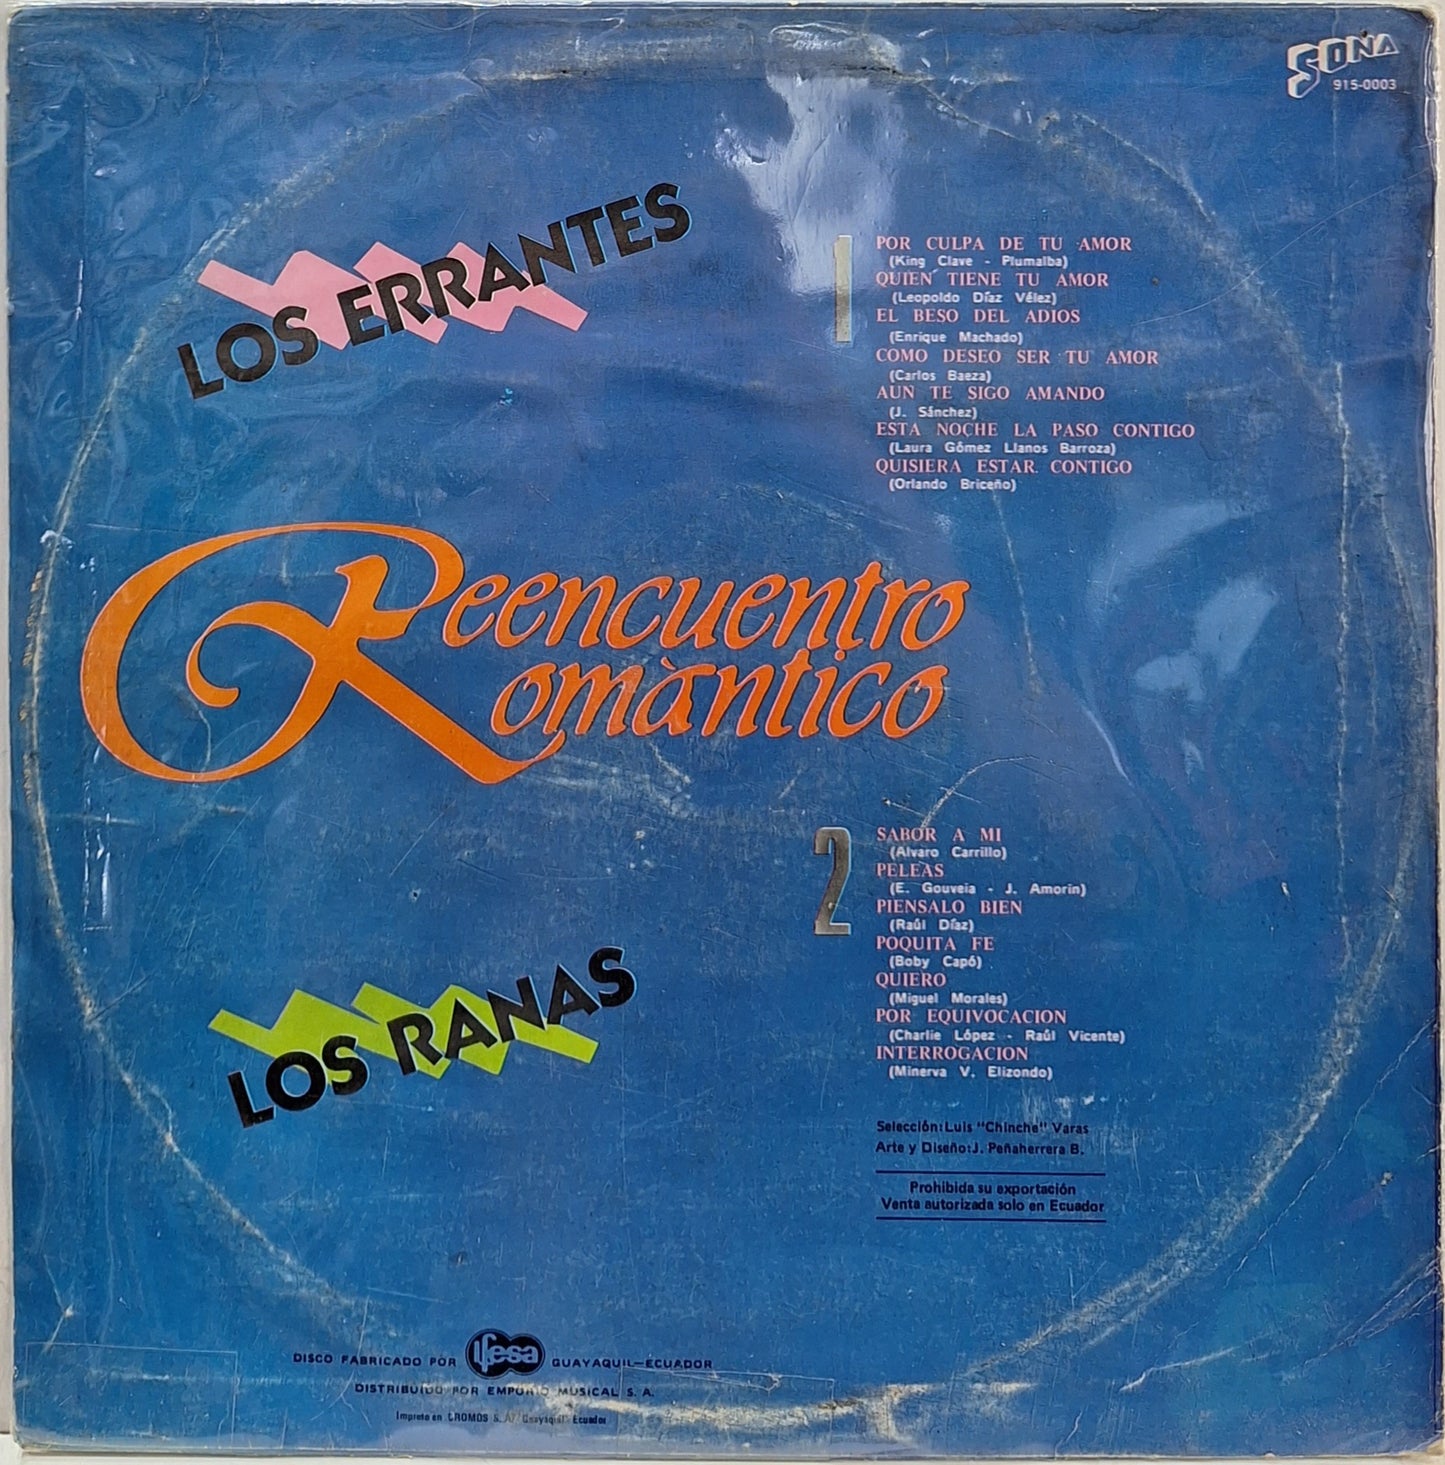 LOS ERRANTES Y LOS RANAS - REENCUENTRO ROMANTICOS  LP